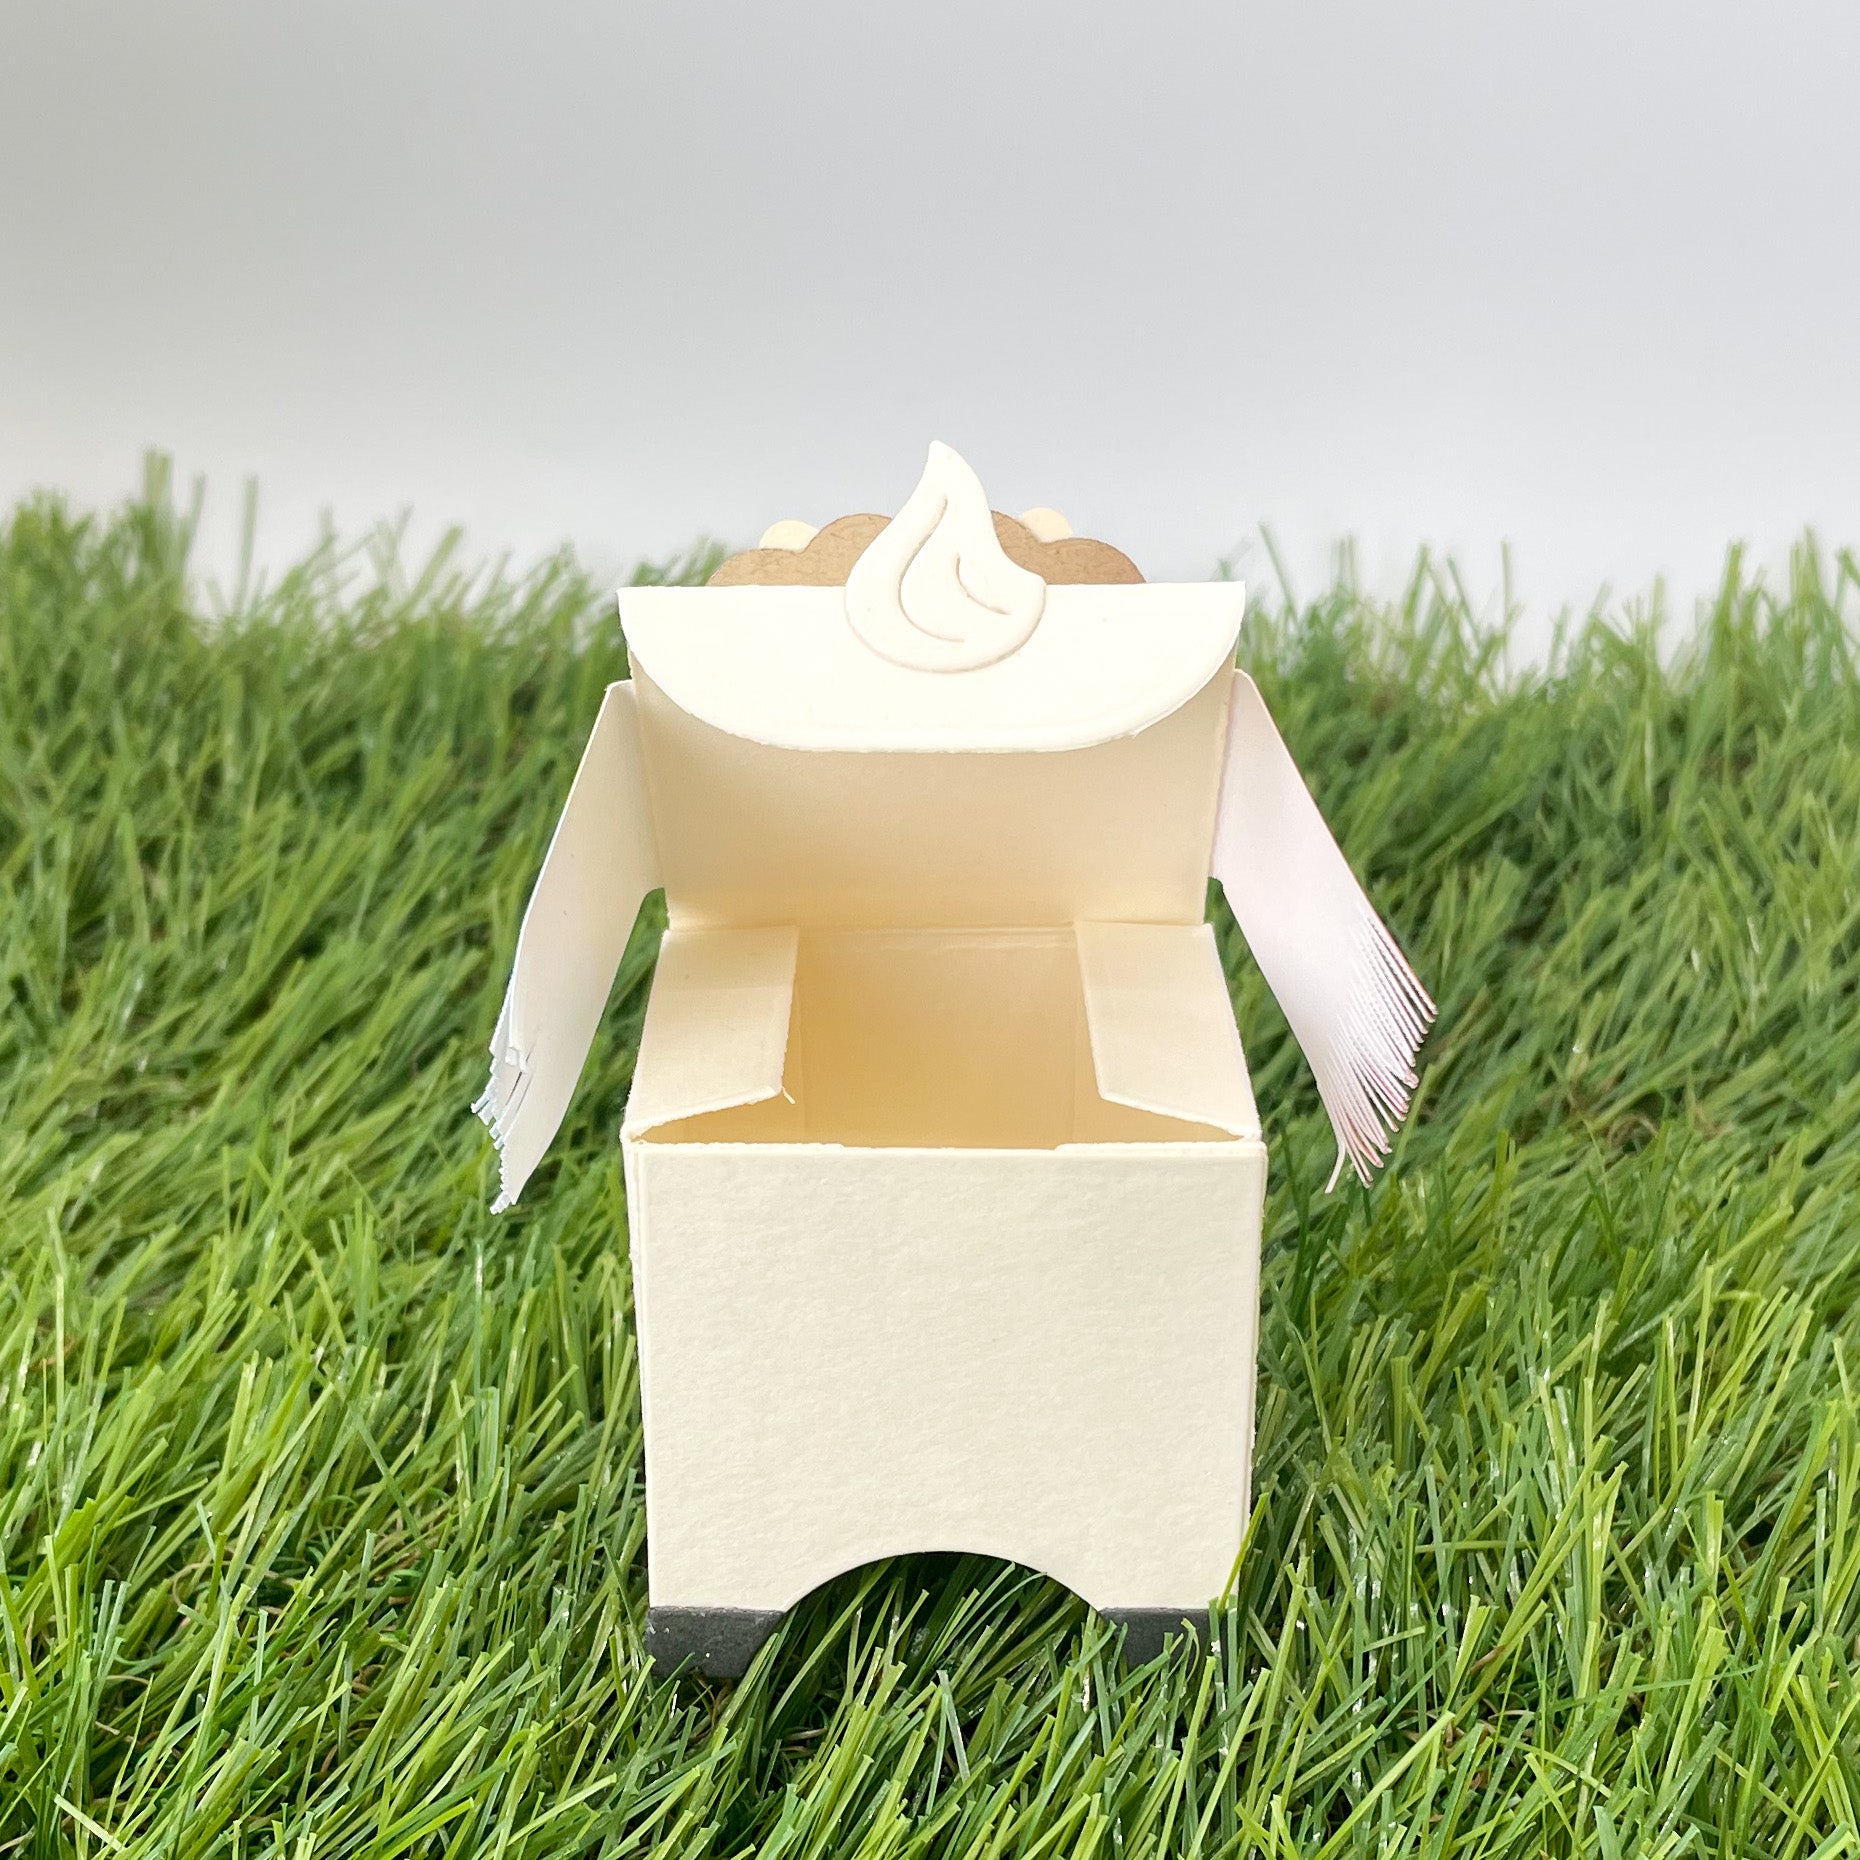 Cute Llama Miniature Gift Box